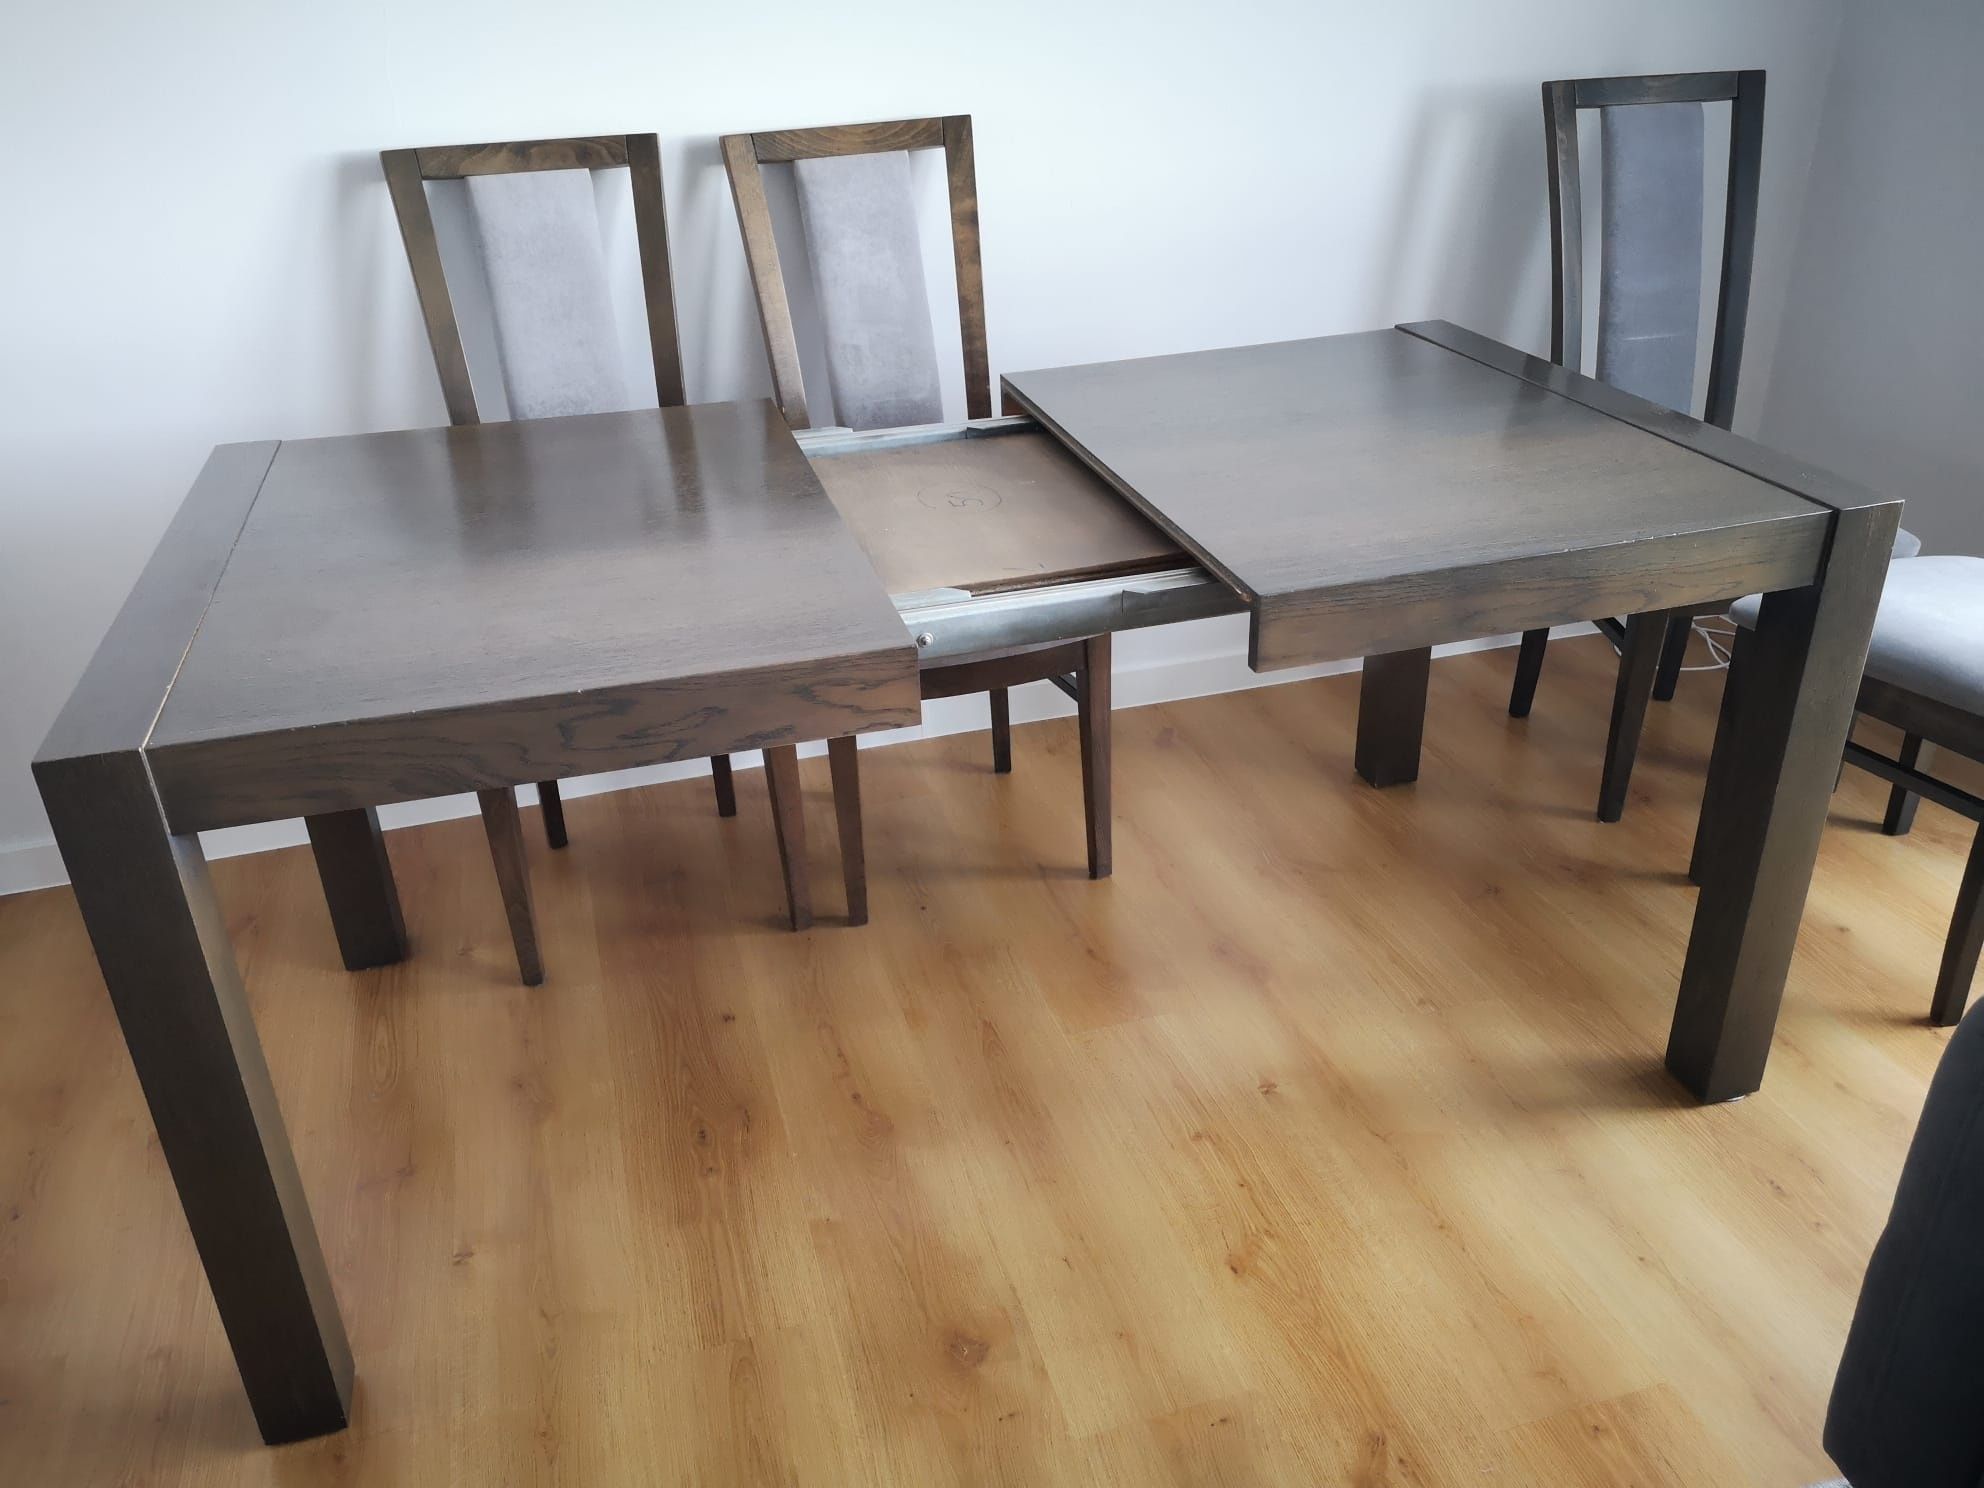 Stół rozkładany + 6 krzeseł. Cena do negocjacji